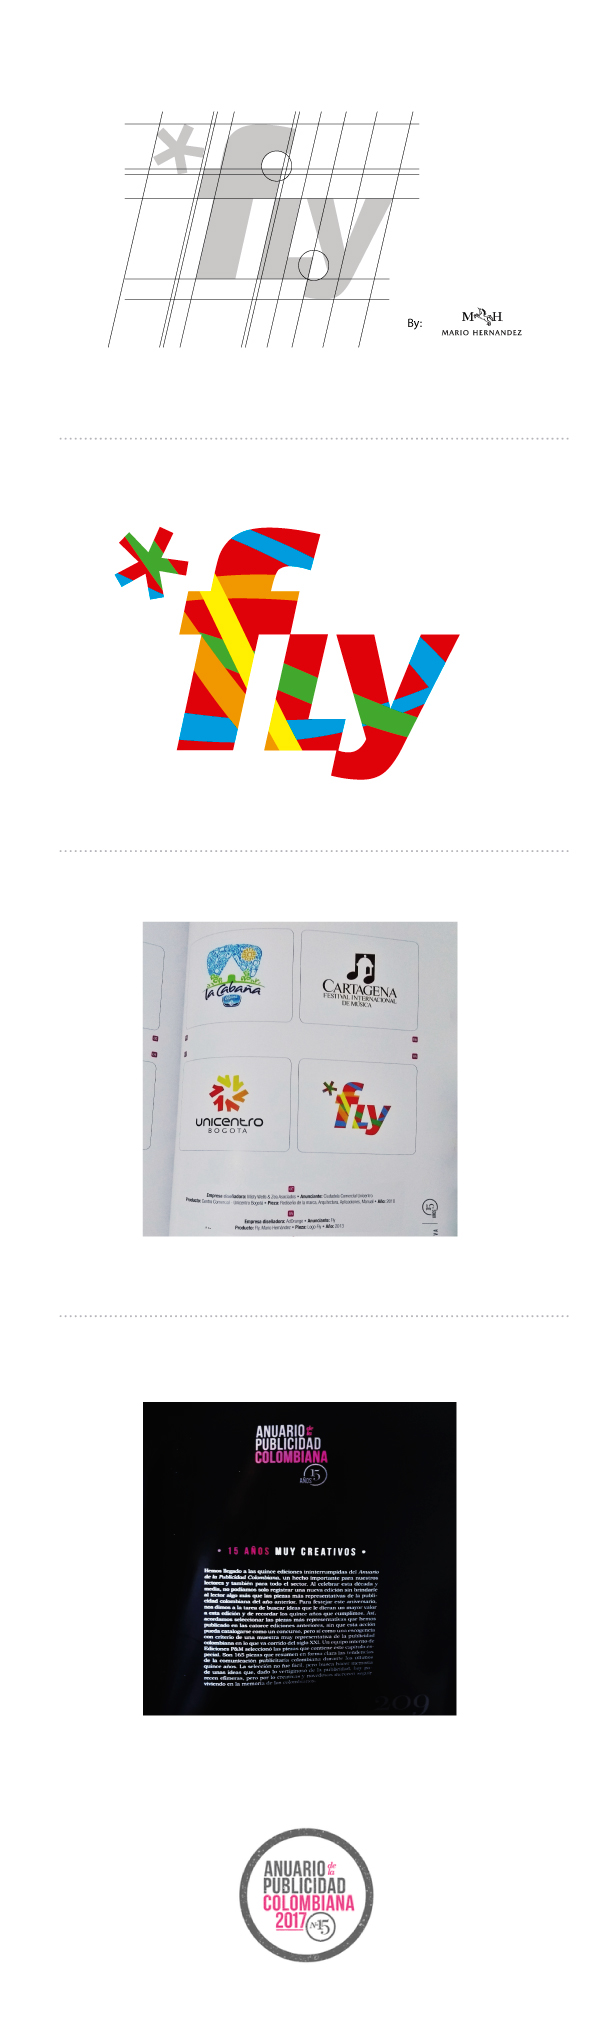 logo design logodesign Fly mario hernandez Anuario publicidad colombiana